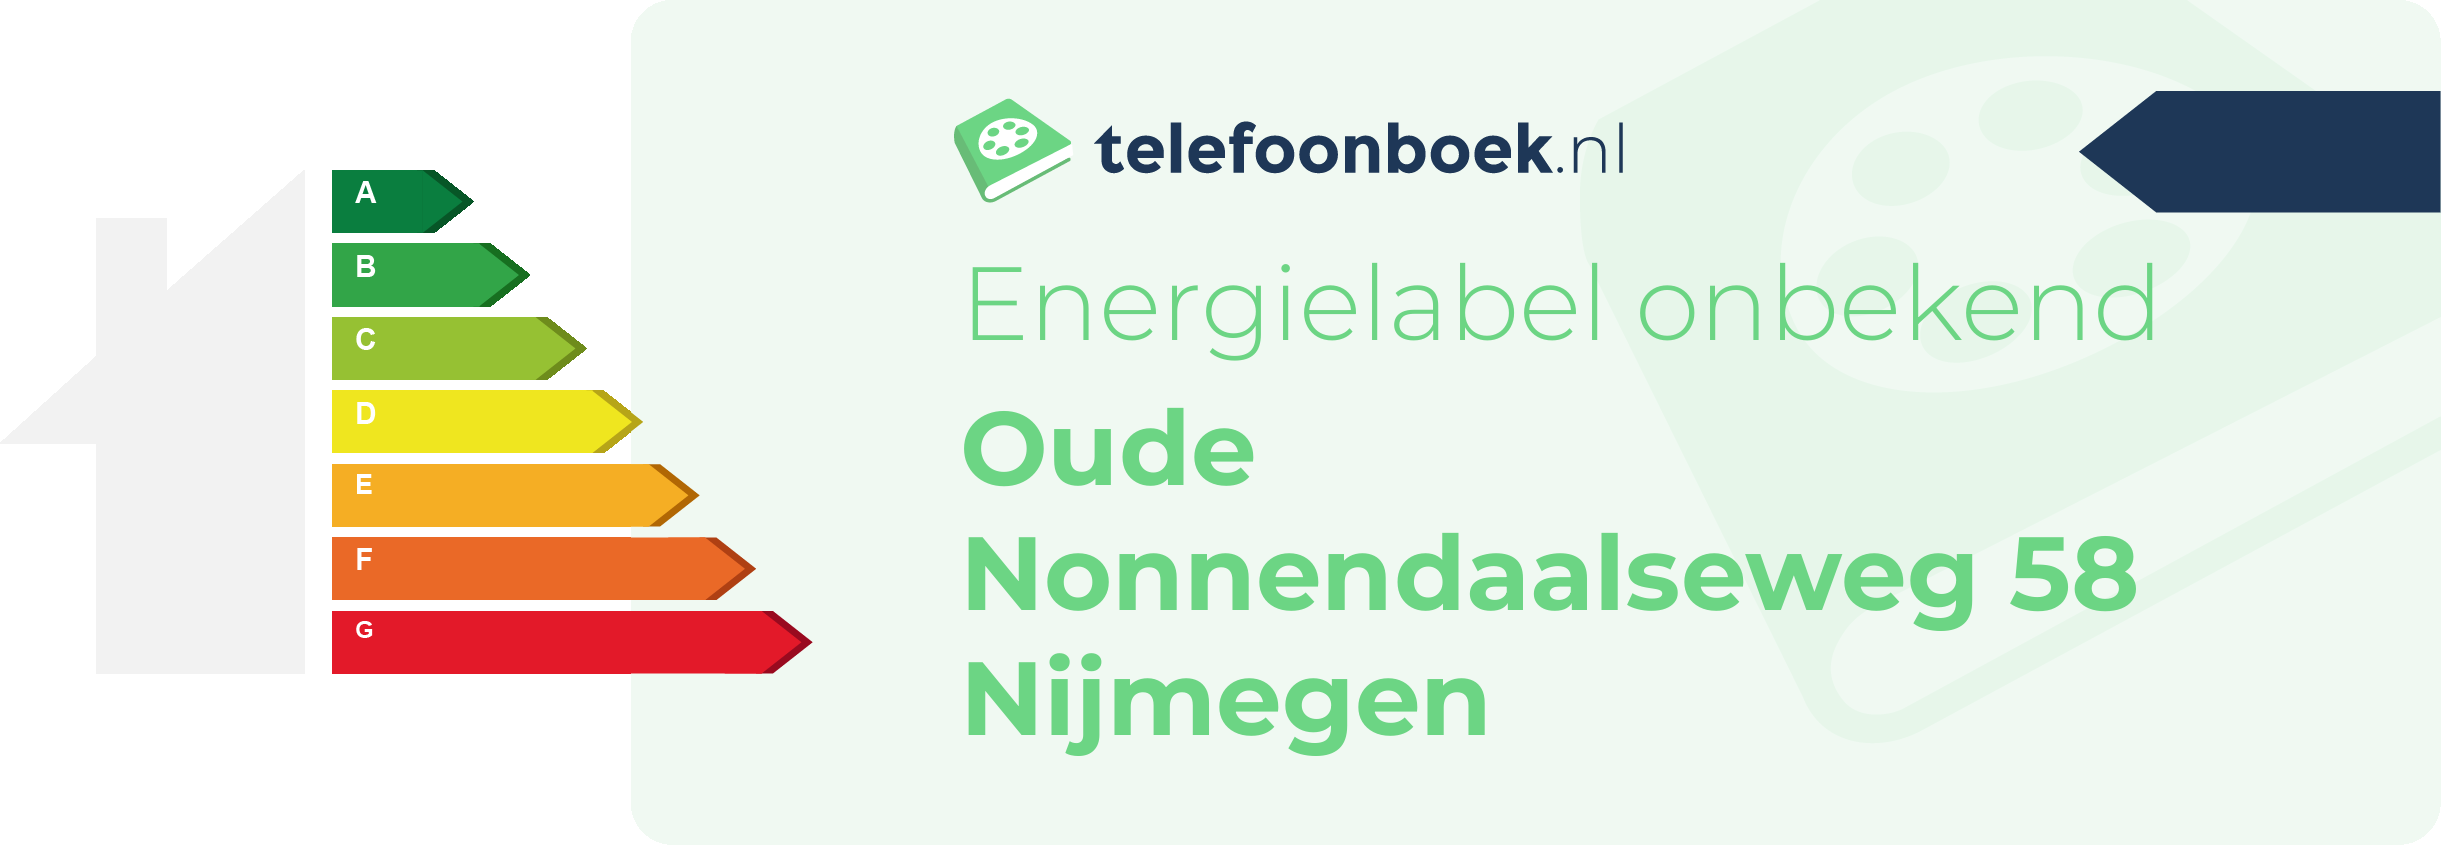 Energielabel Oude Nonnendaalseweg 58 Nijmegen